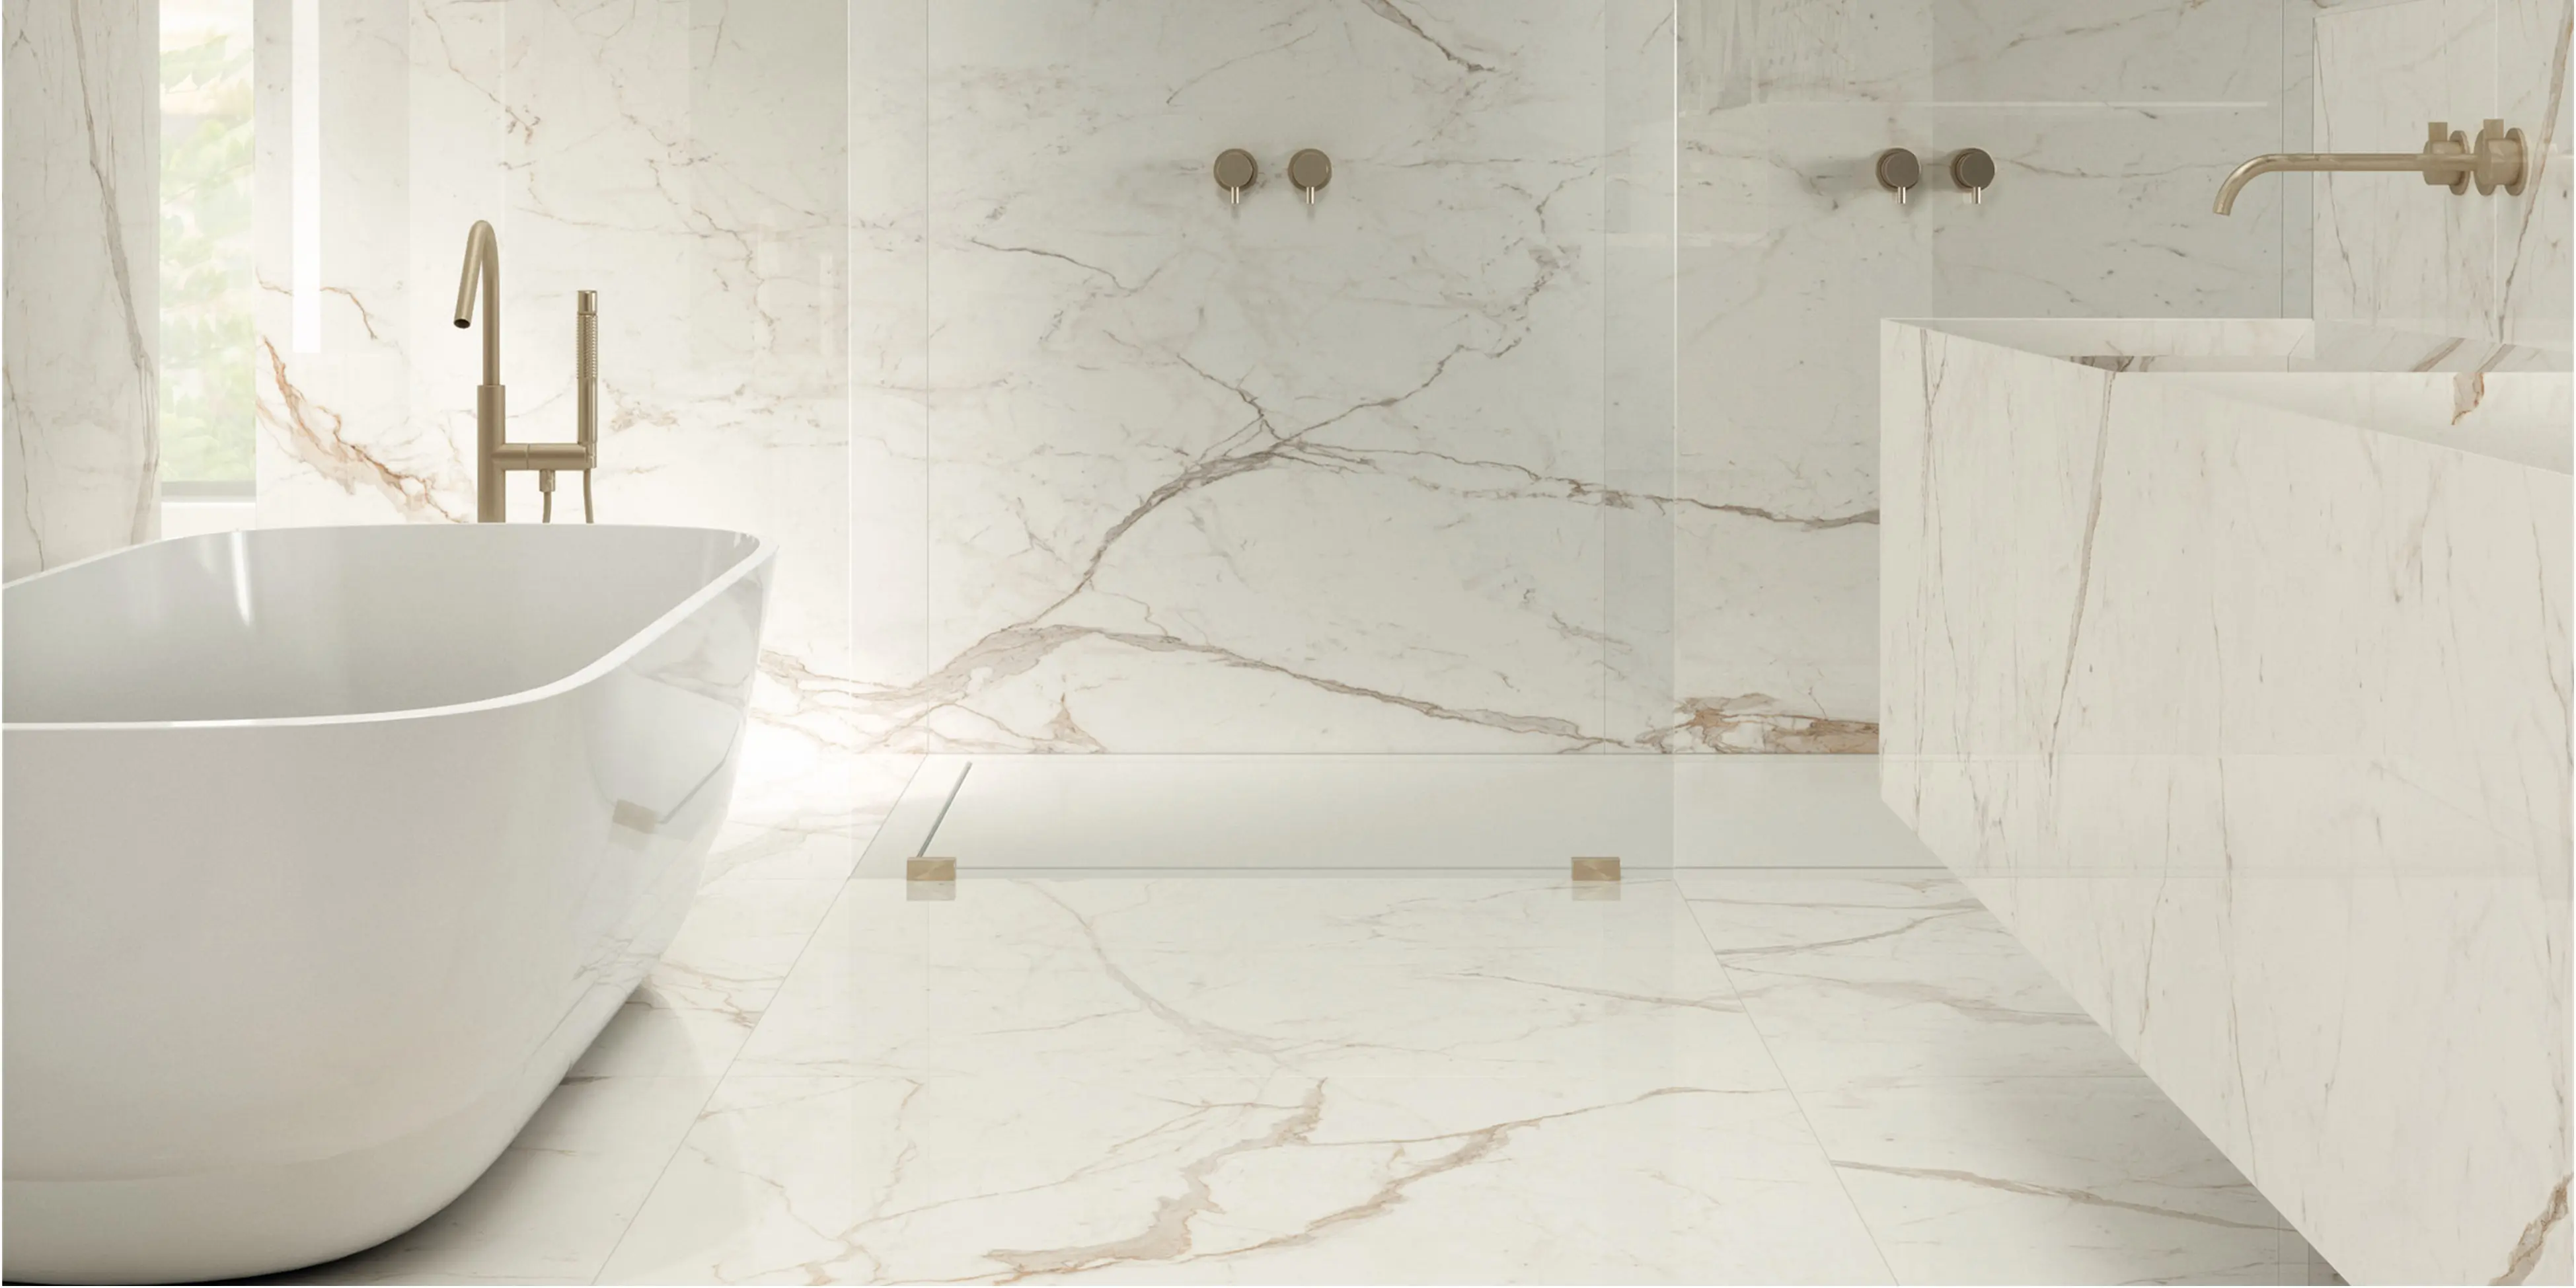 Storformat fliser, med marmorlook i hvidlige farve med beige åre, på vægge og gulv i badeværelset, skaber et roligt look.